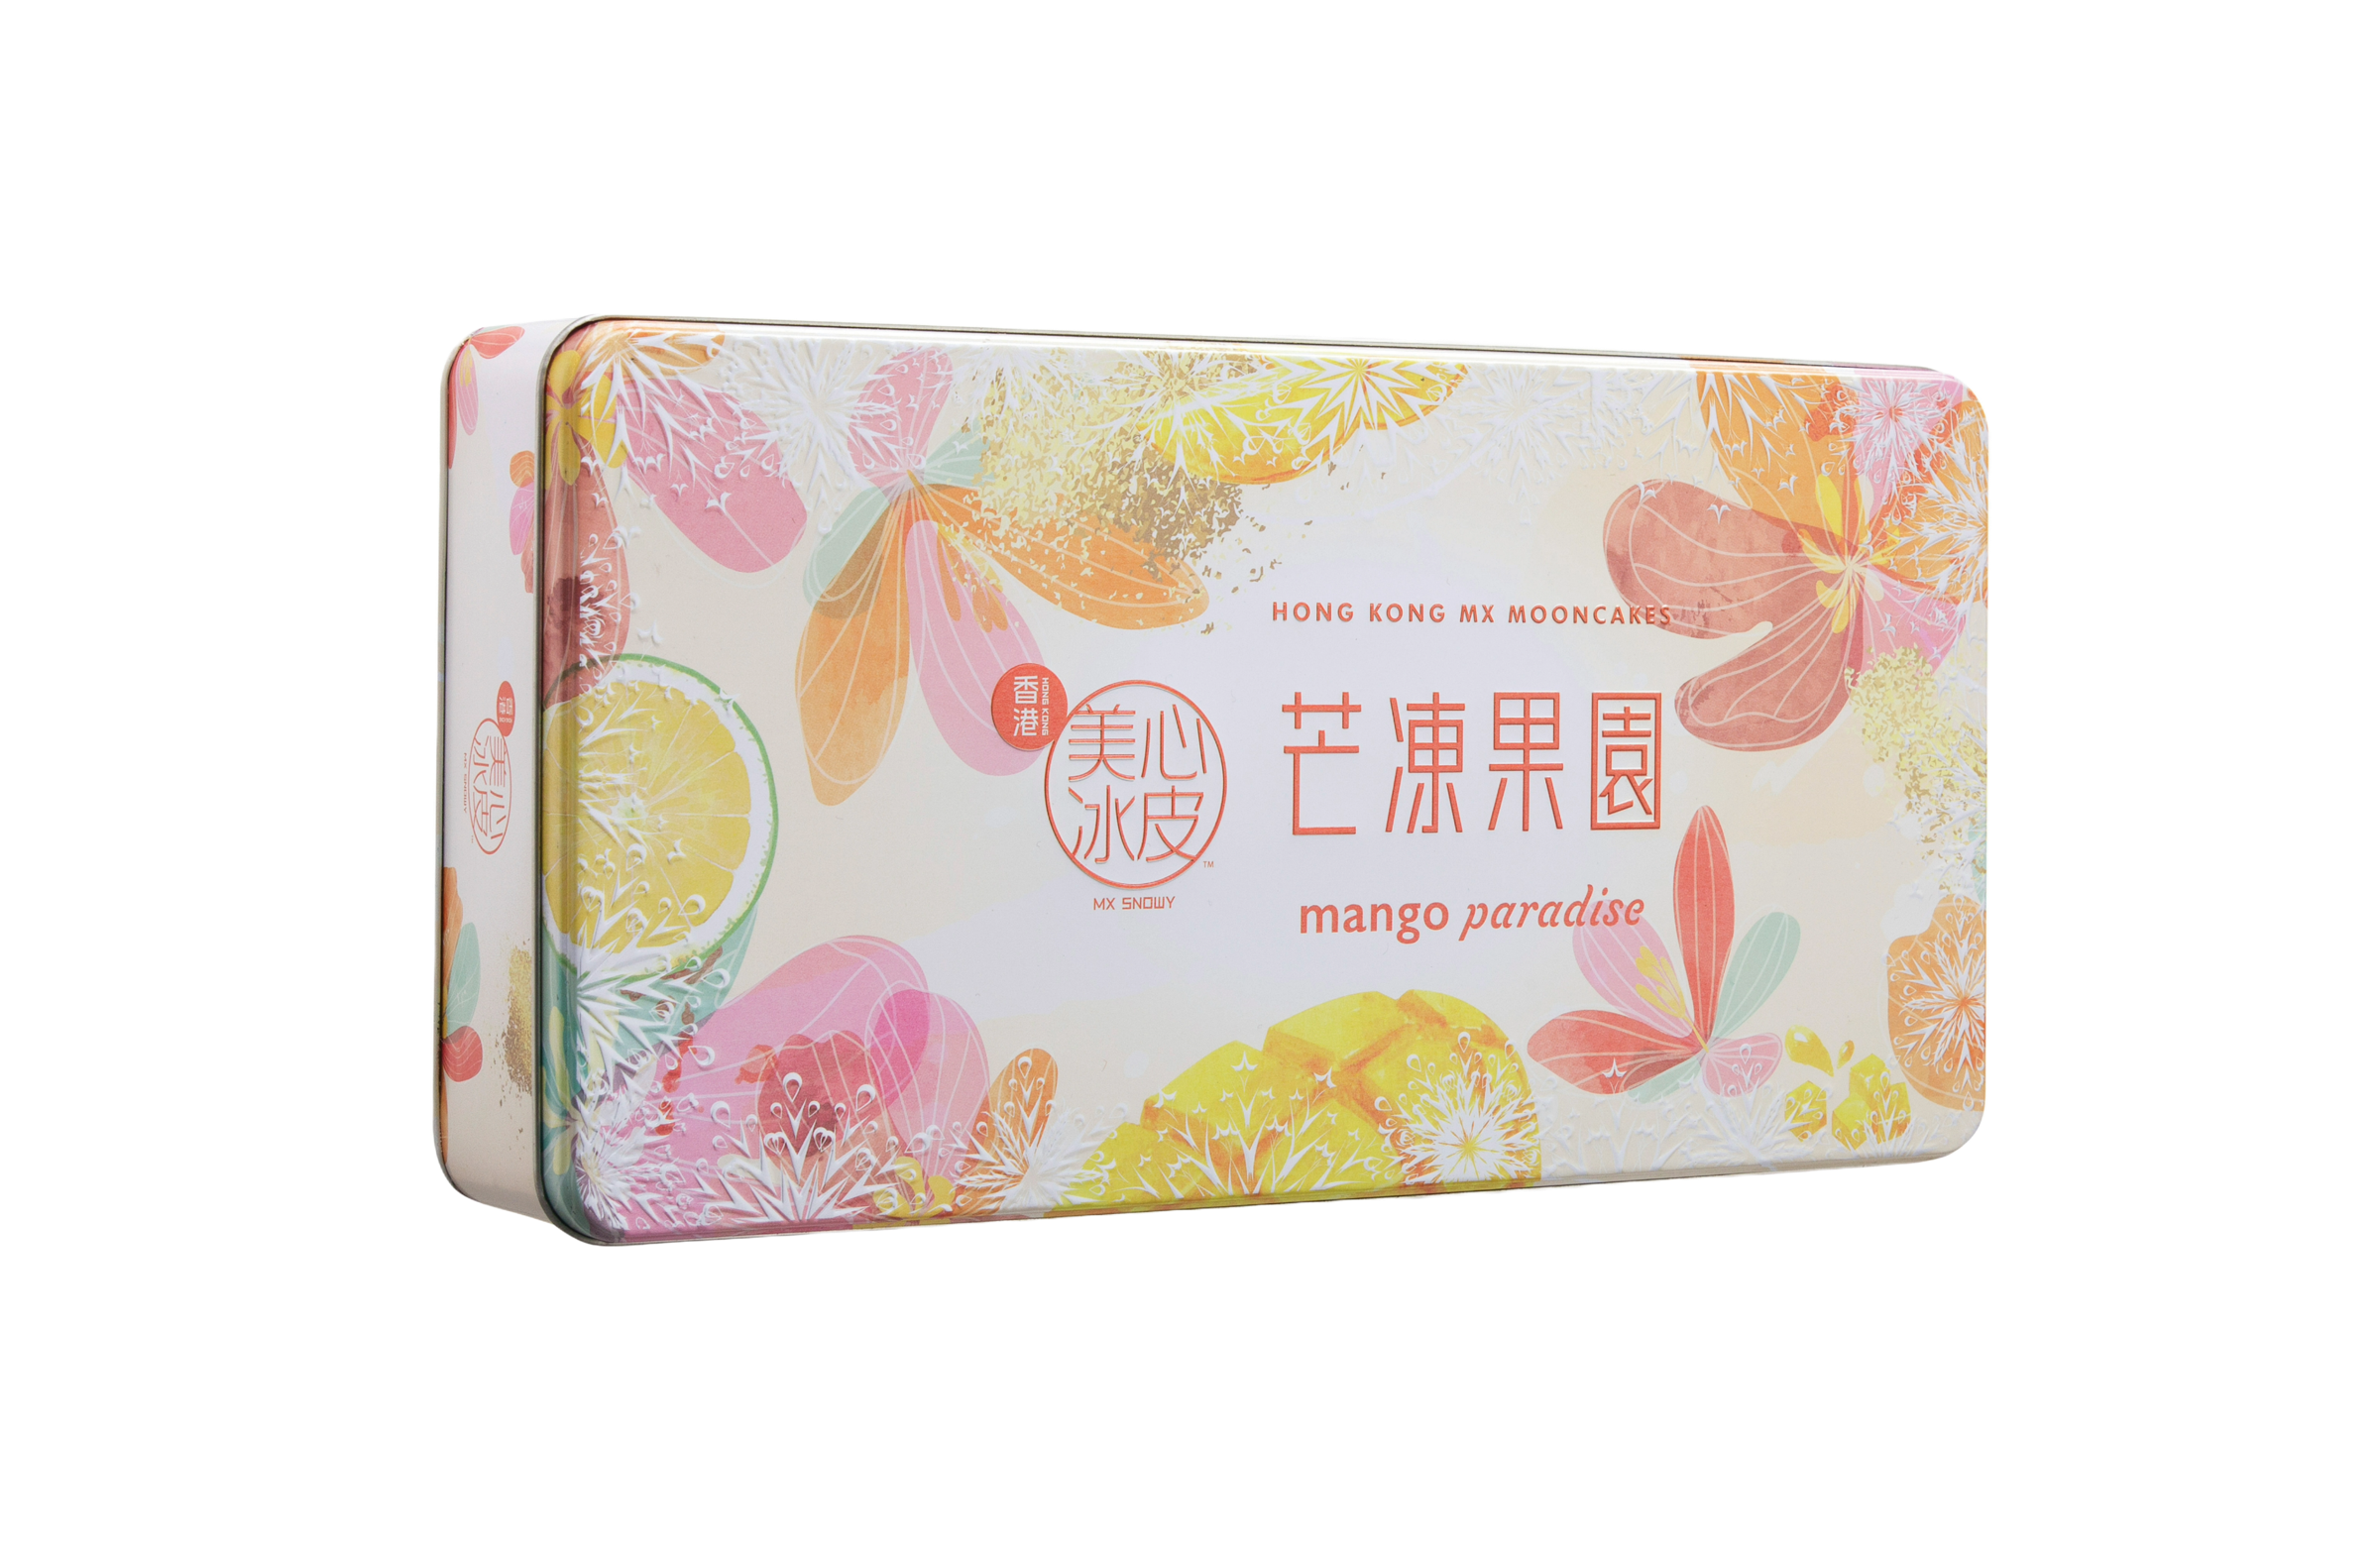 Hong Kong MX | Snowy Mango Paradise Gift Box (Physical Coupon)